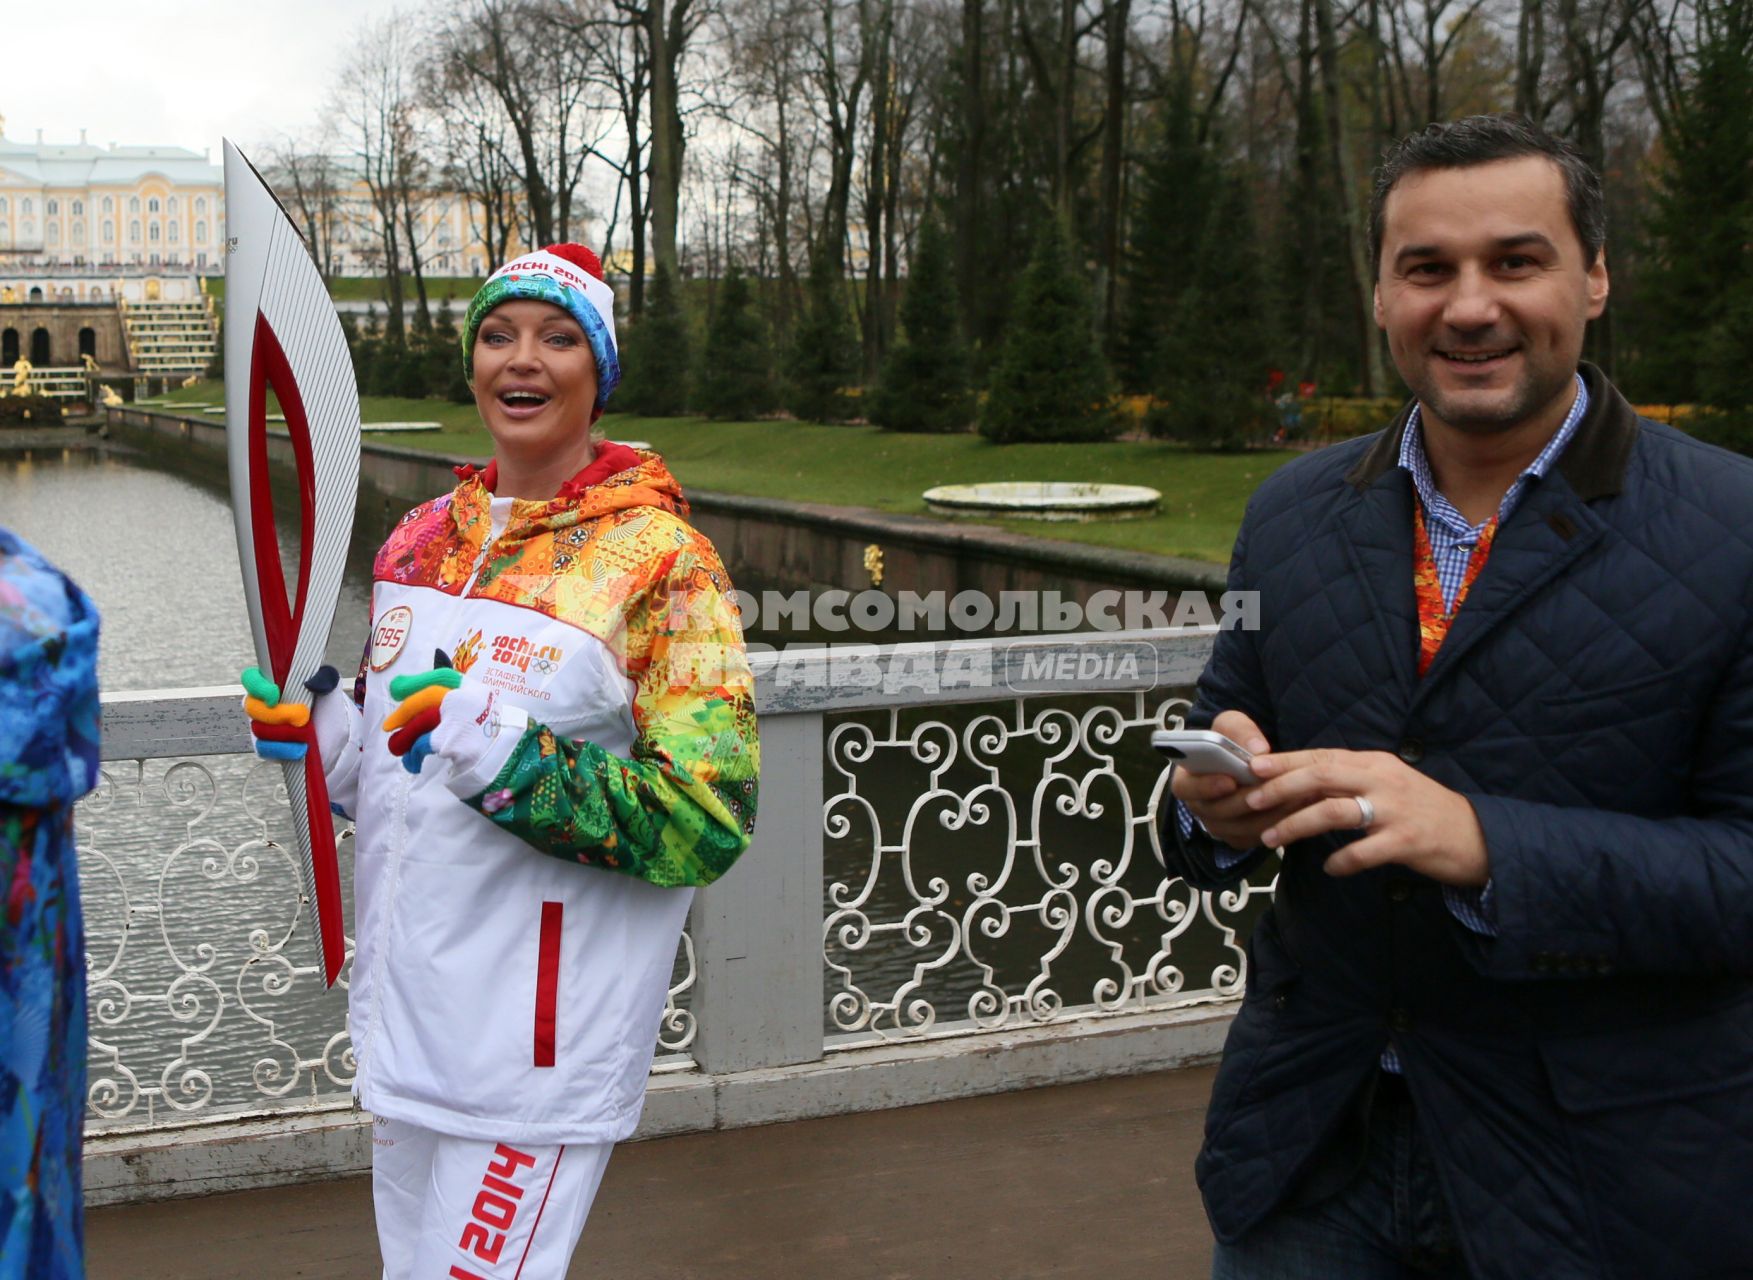 Балерина и общественный деятель Анастасия Волочкова с олимпийским факелом участвует в эстафете олимпийского огня.